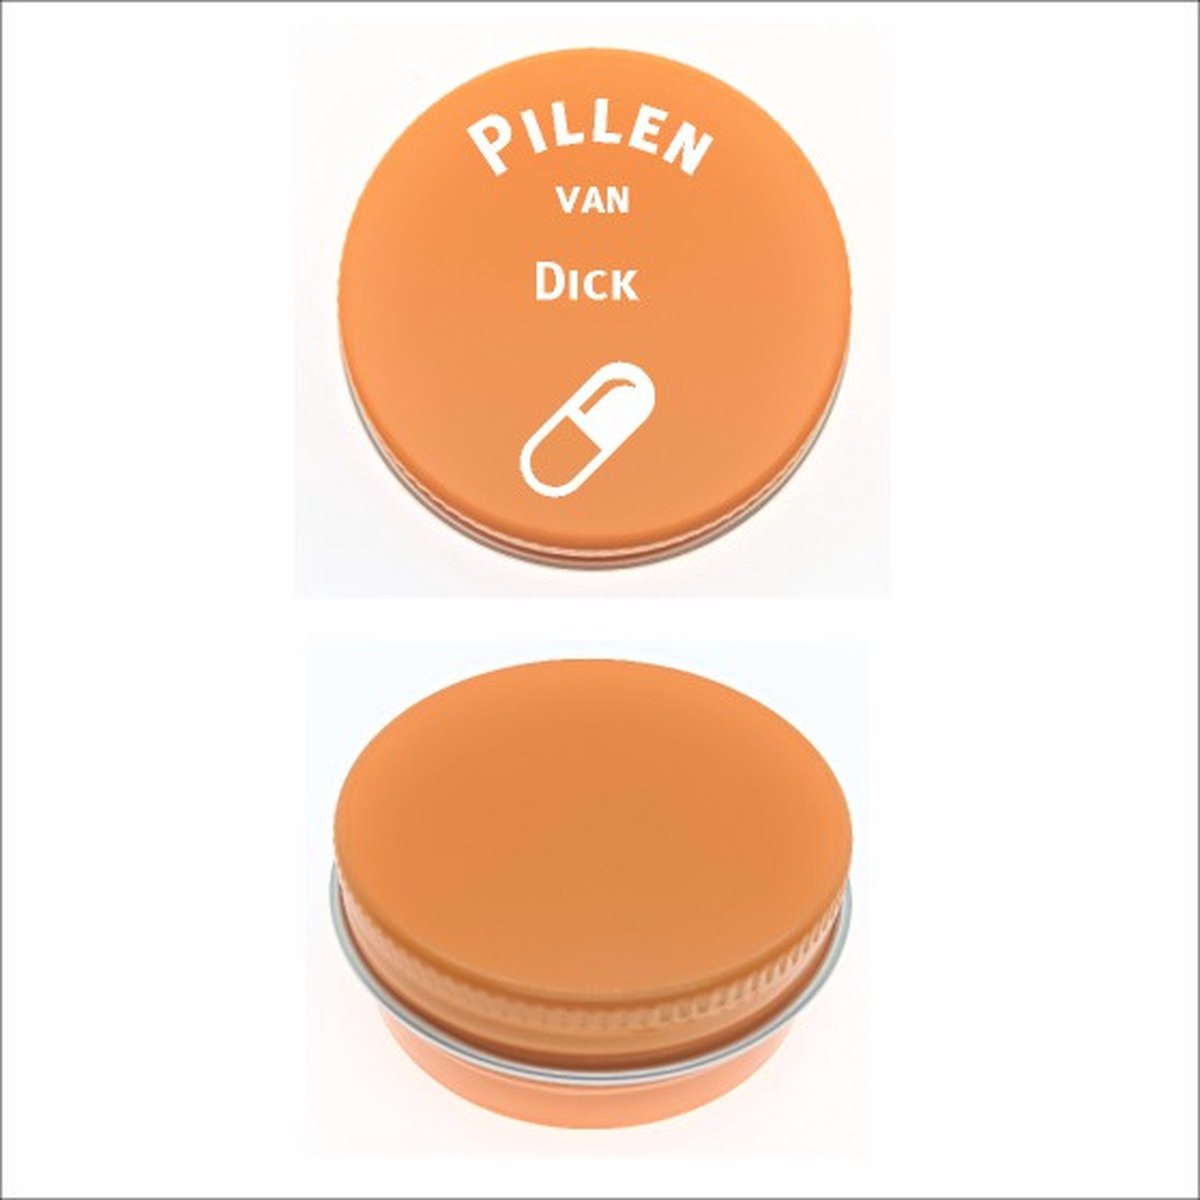 Pillen Blikje Met Naam Gravering - Dick